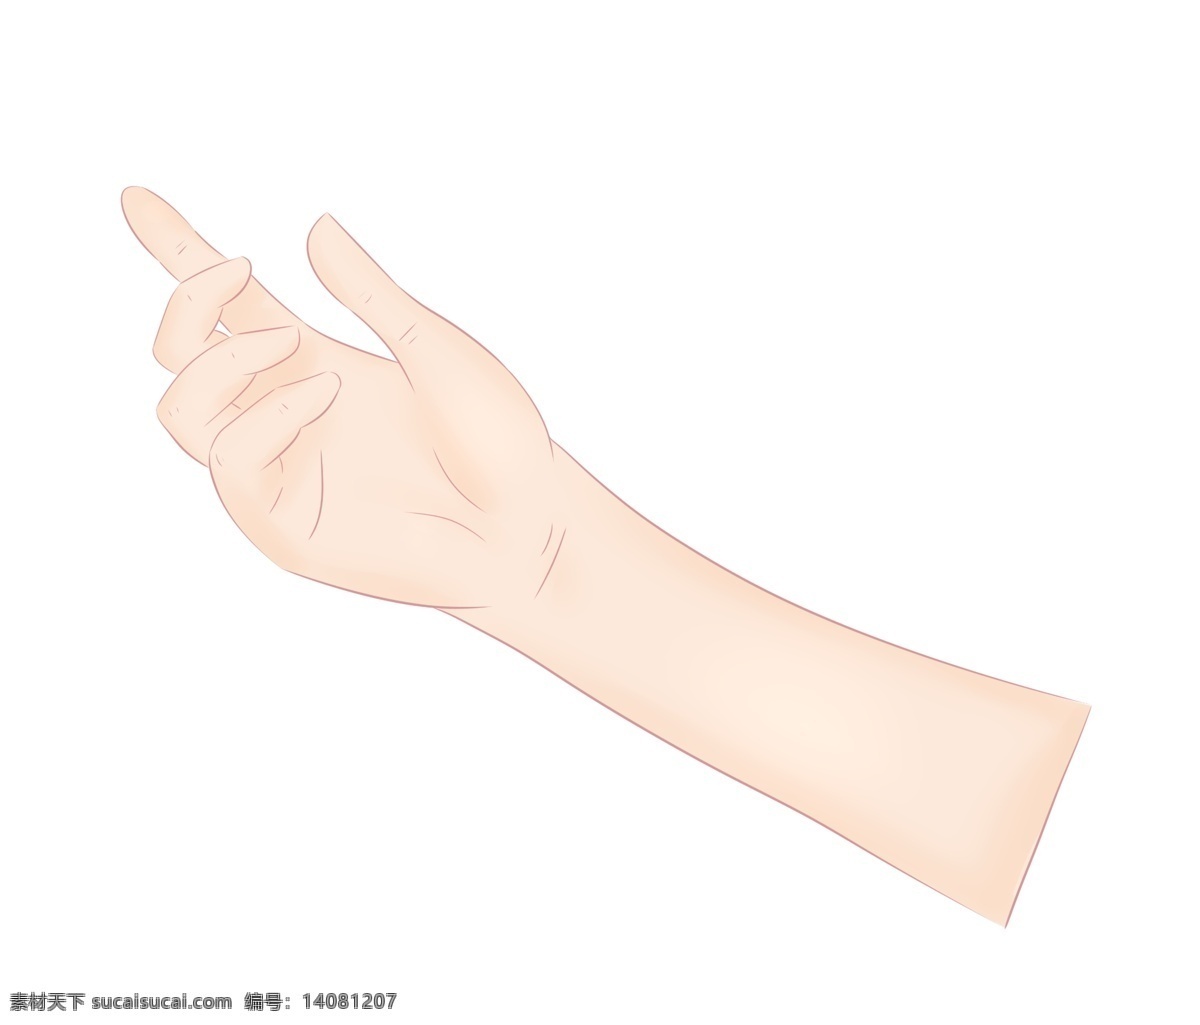 漂亮 手势 卡通 插画 优美的手势 卡通插画 手势的插画 肢体语言 哑语 摆姿势 手语 漂亮的手势